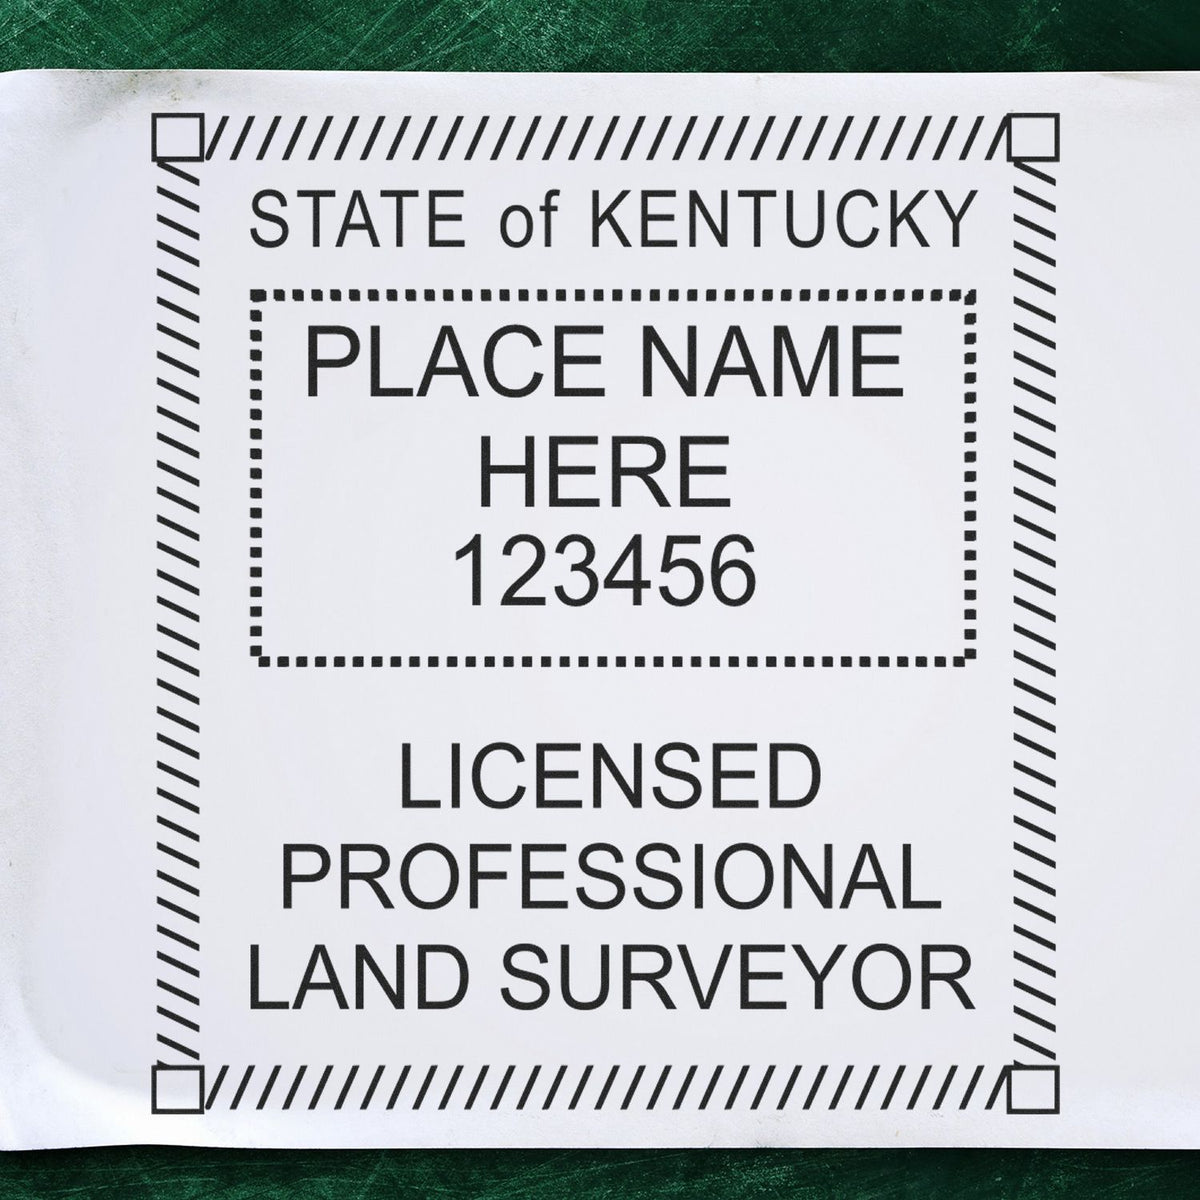 Kentucky Land Surveyor Seal Stamp In Use Photo